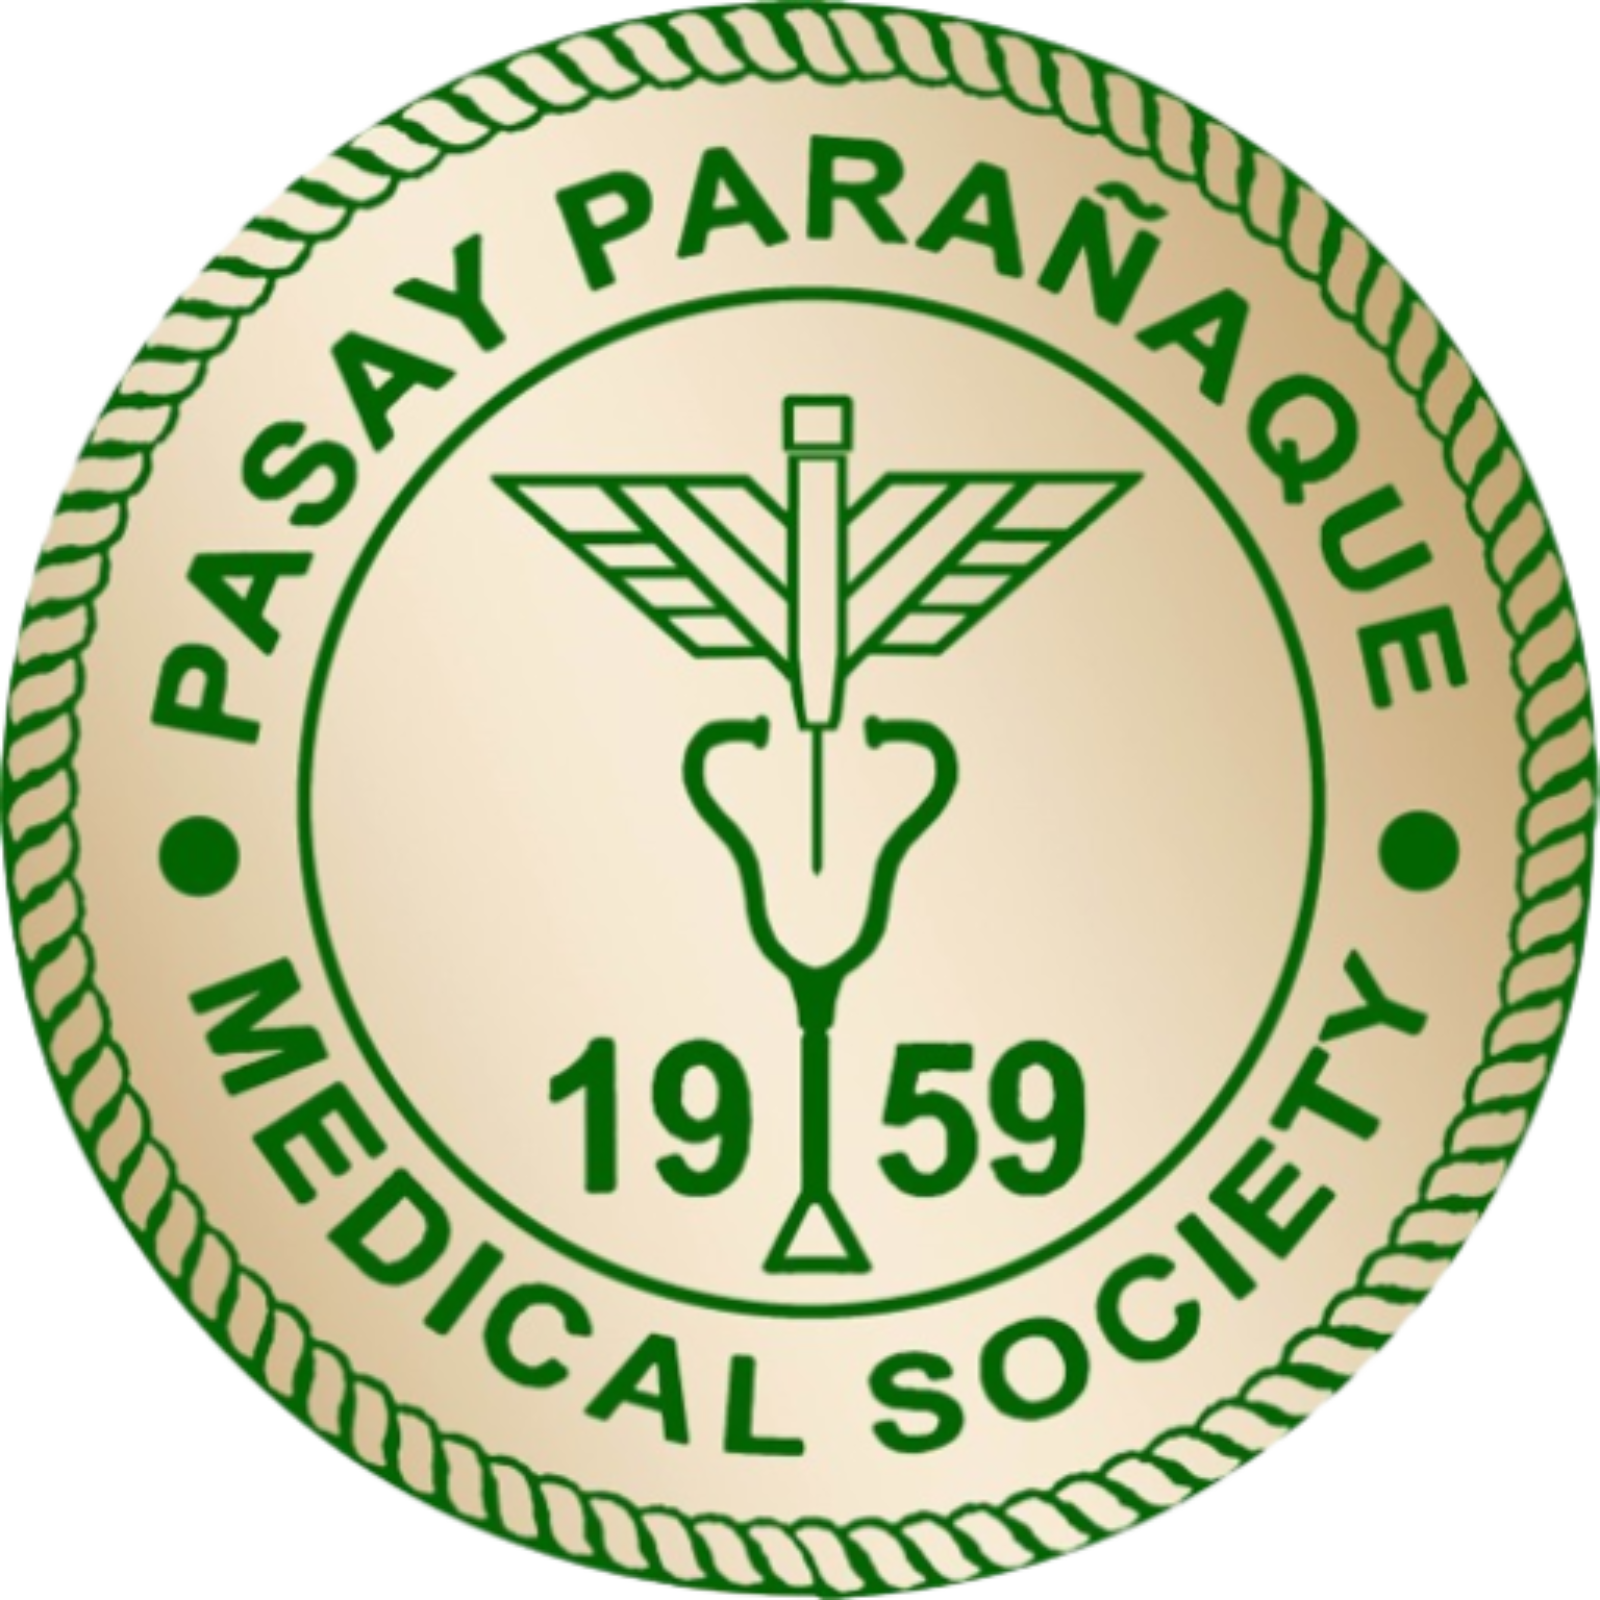                                                PASAY-PARAÑAQUE MEDICAL SOCIETY Inc.